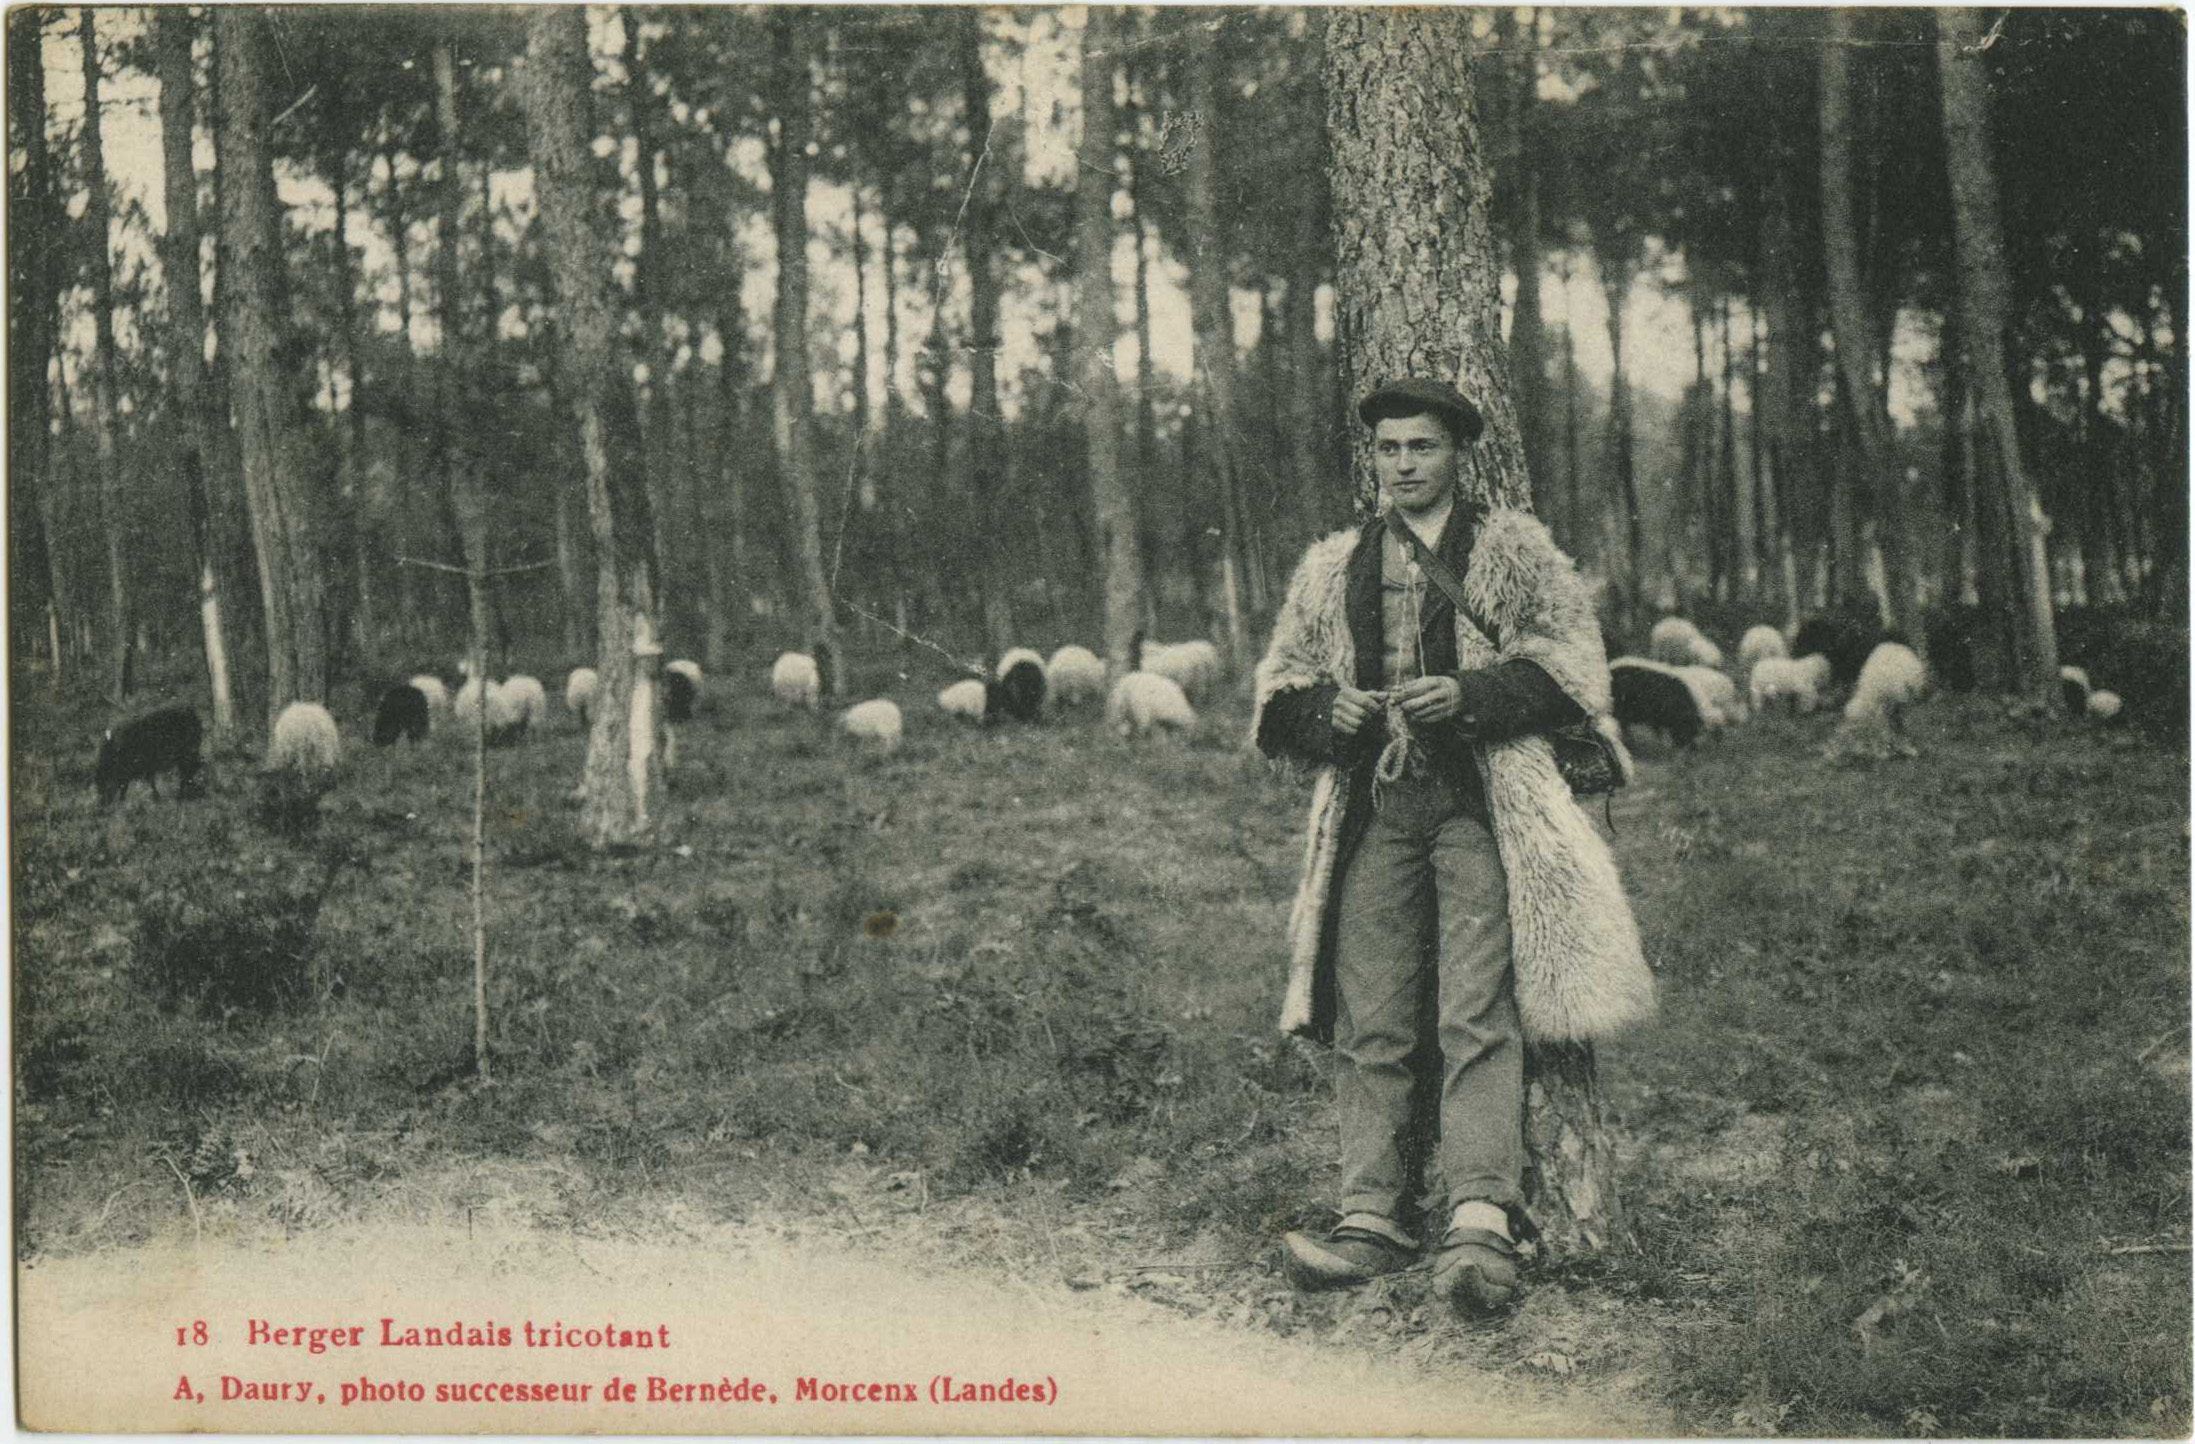 Landes - Berger Landais tricotant